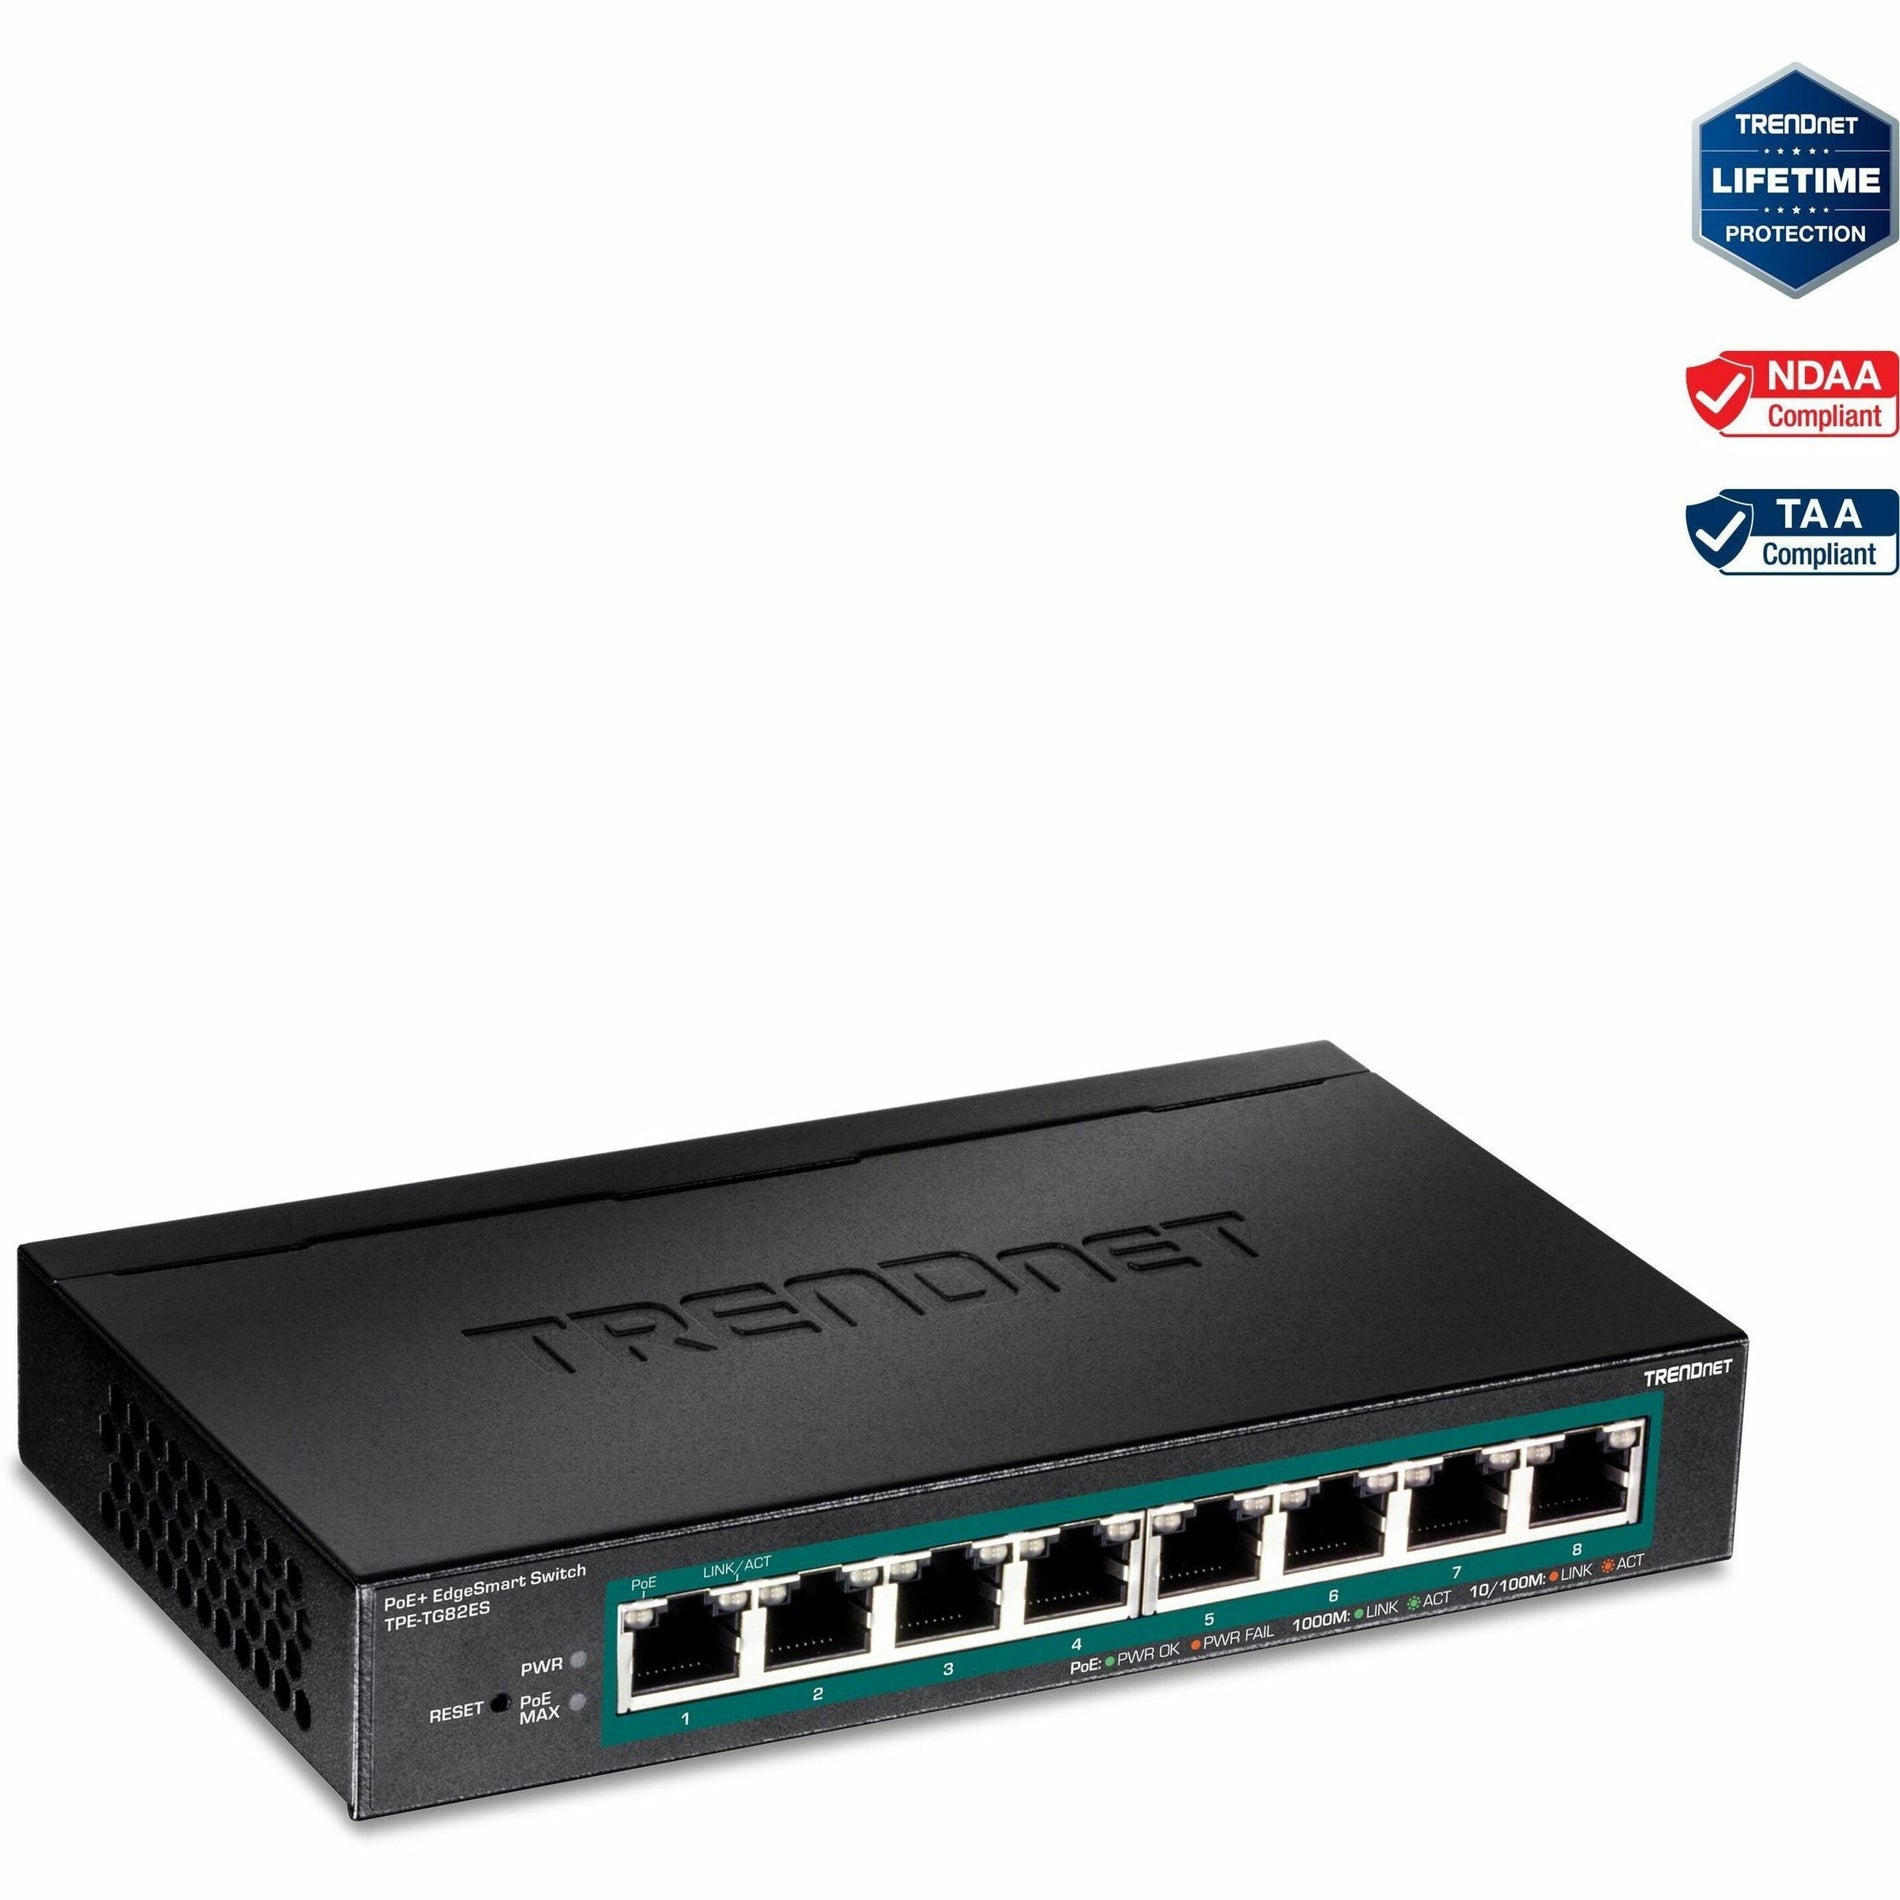 TRENDnet TPE-TG82ES 8-ポート ギガビット エッジスマート PoE+ スイッチ、64W パワーバジェット、壁取り付け可能、ライフタイム保護 ブランド名: トレンドネット (TRENDnet)